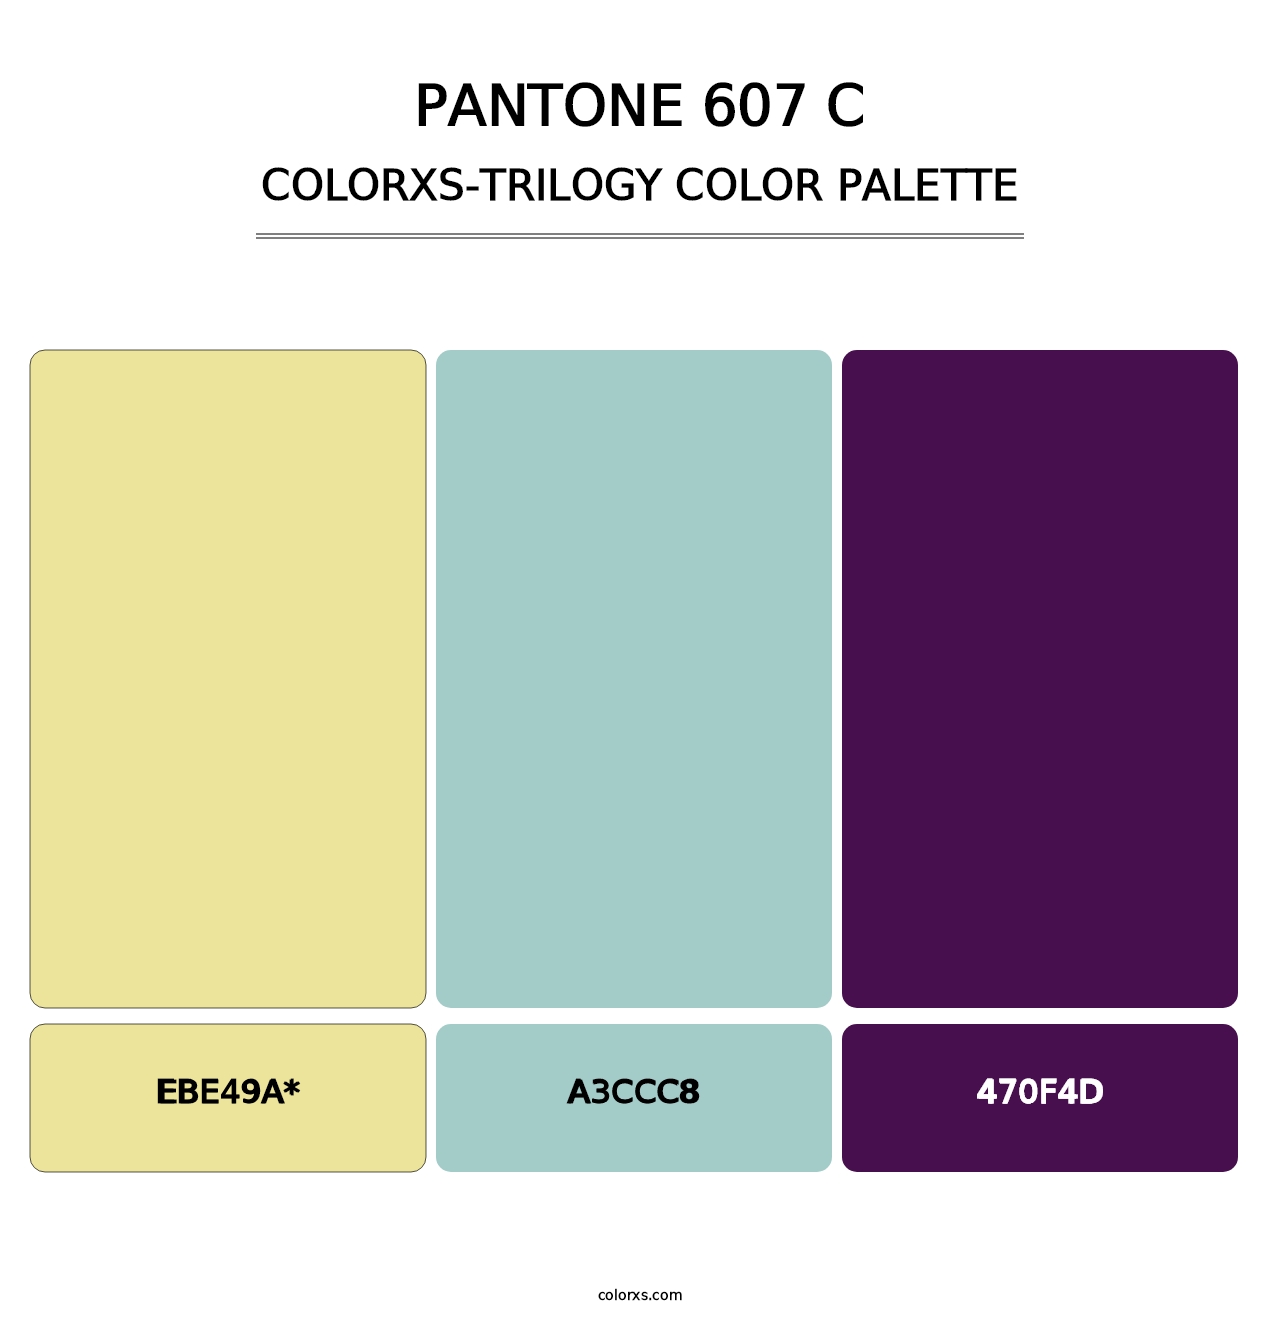 PANTONE 607 C - Colorxs Trilogy Palette